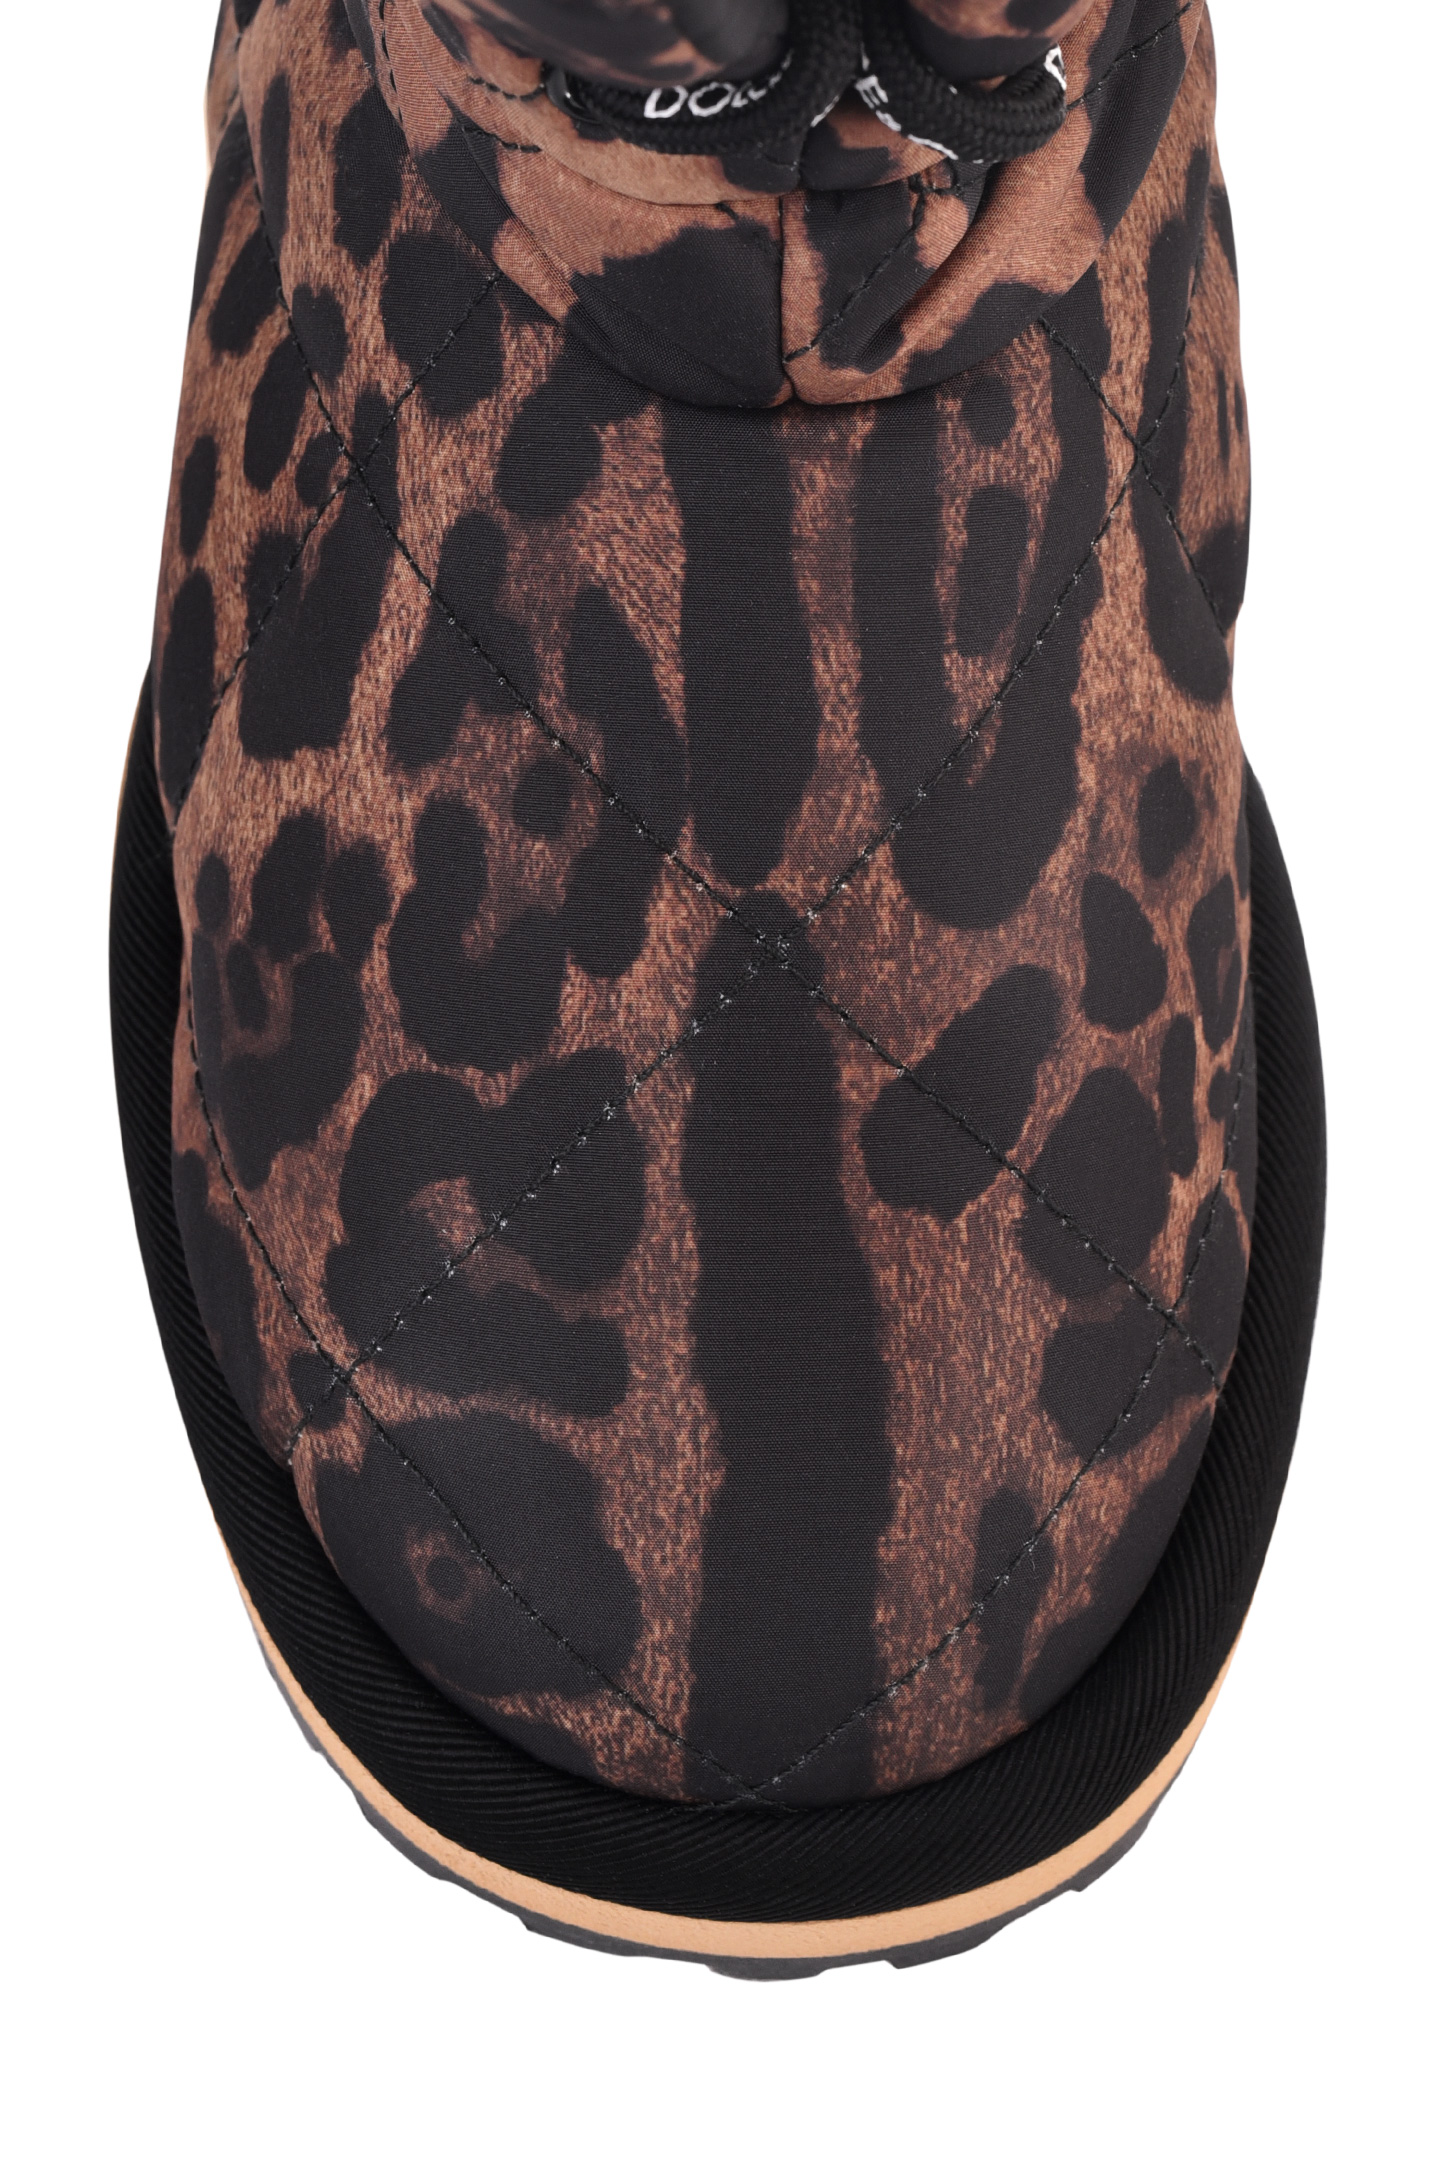 Ботинки DOLCE & GABBANA CK1891 AO841, цвет: Леопардовый, Женский